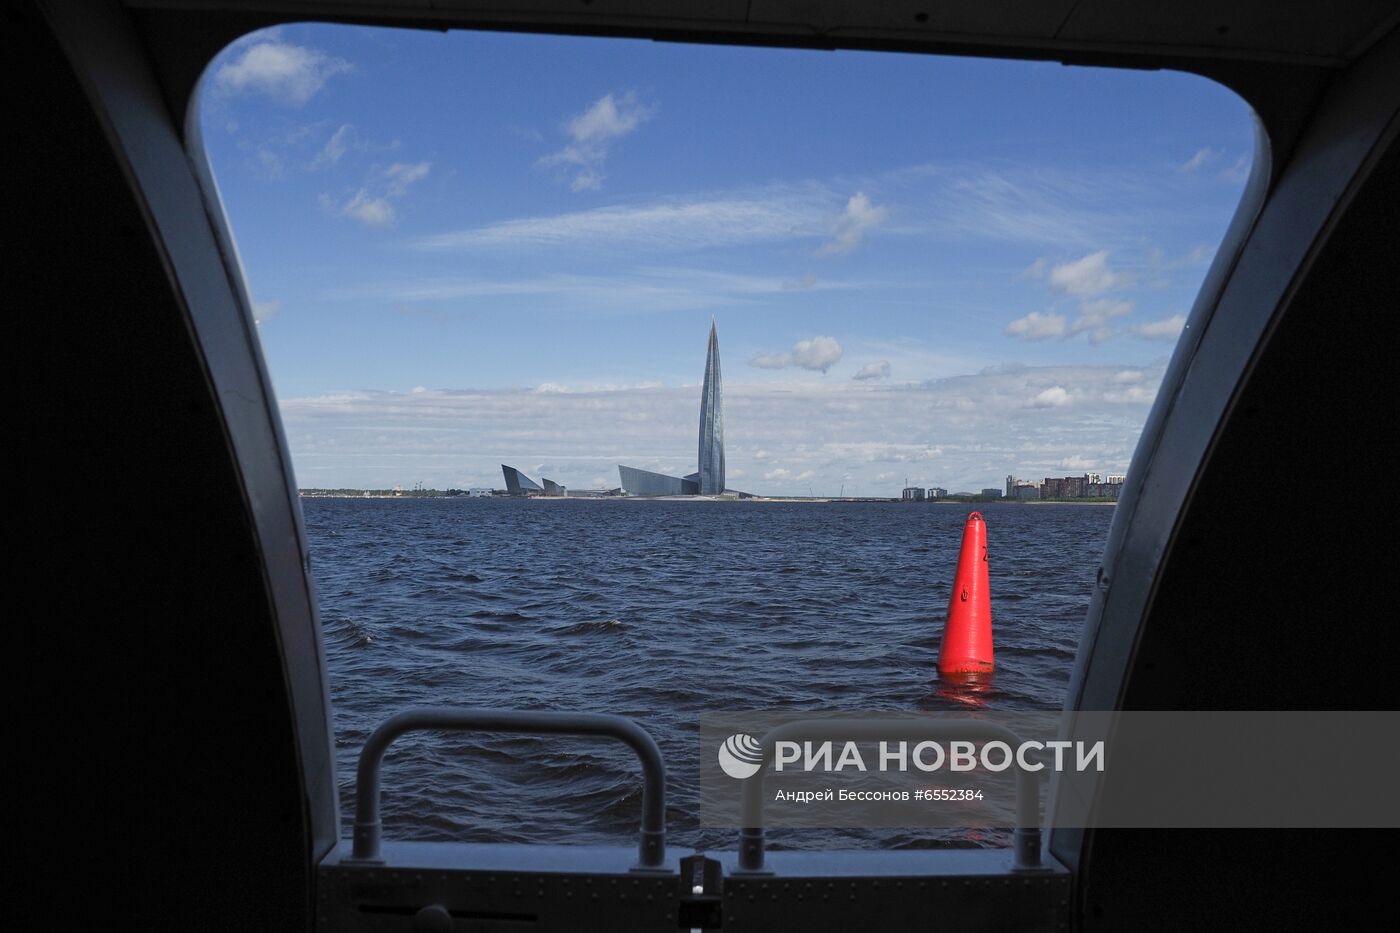 Открытие водного сообщения между "Островом фортов" и Санкт-Петербургом